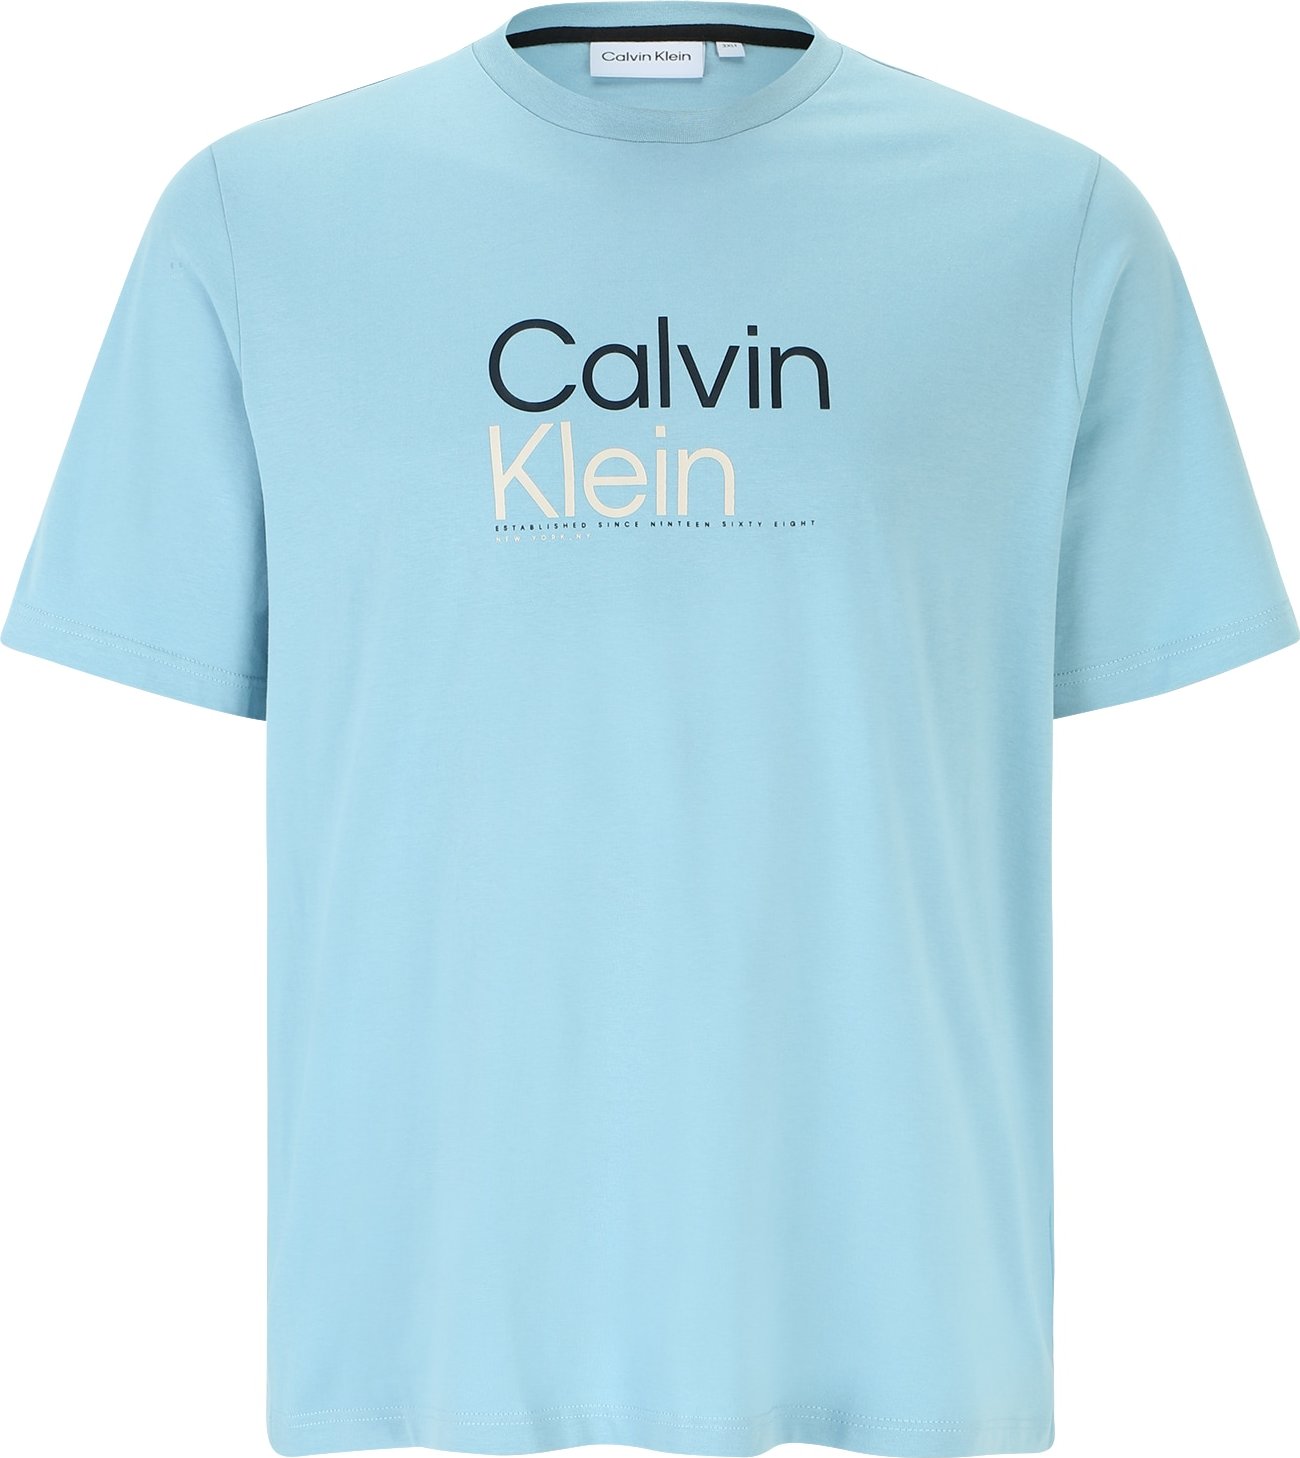 Tričko Calvin Klein Big & Tall světlemodrá / černá / offwhite